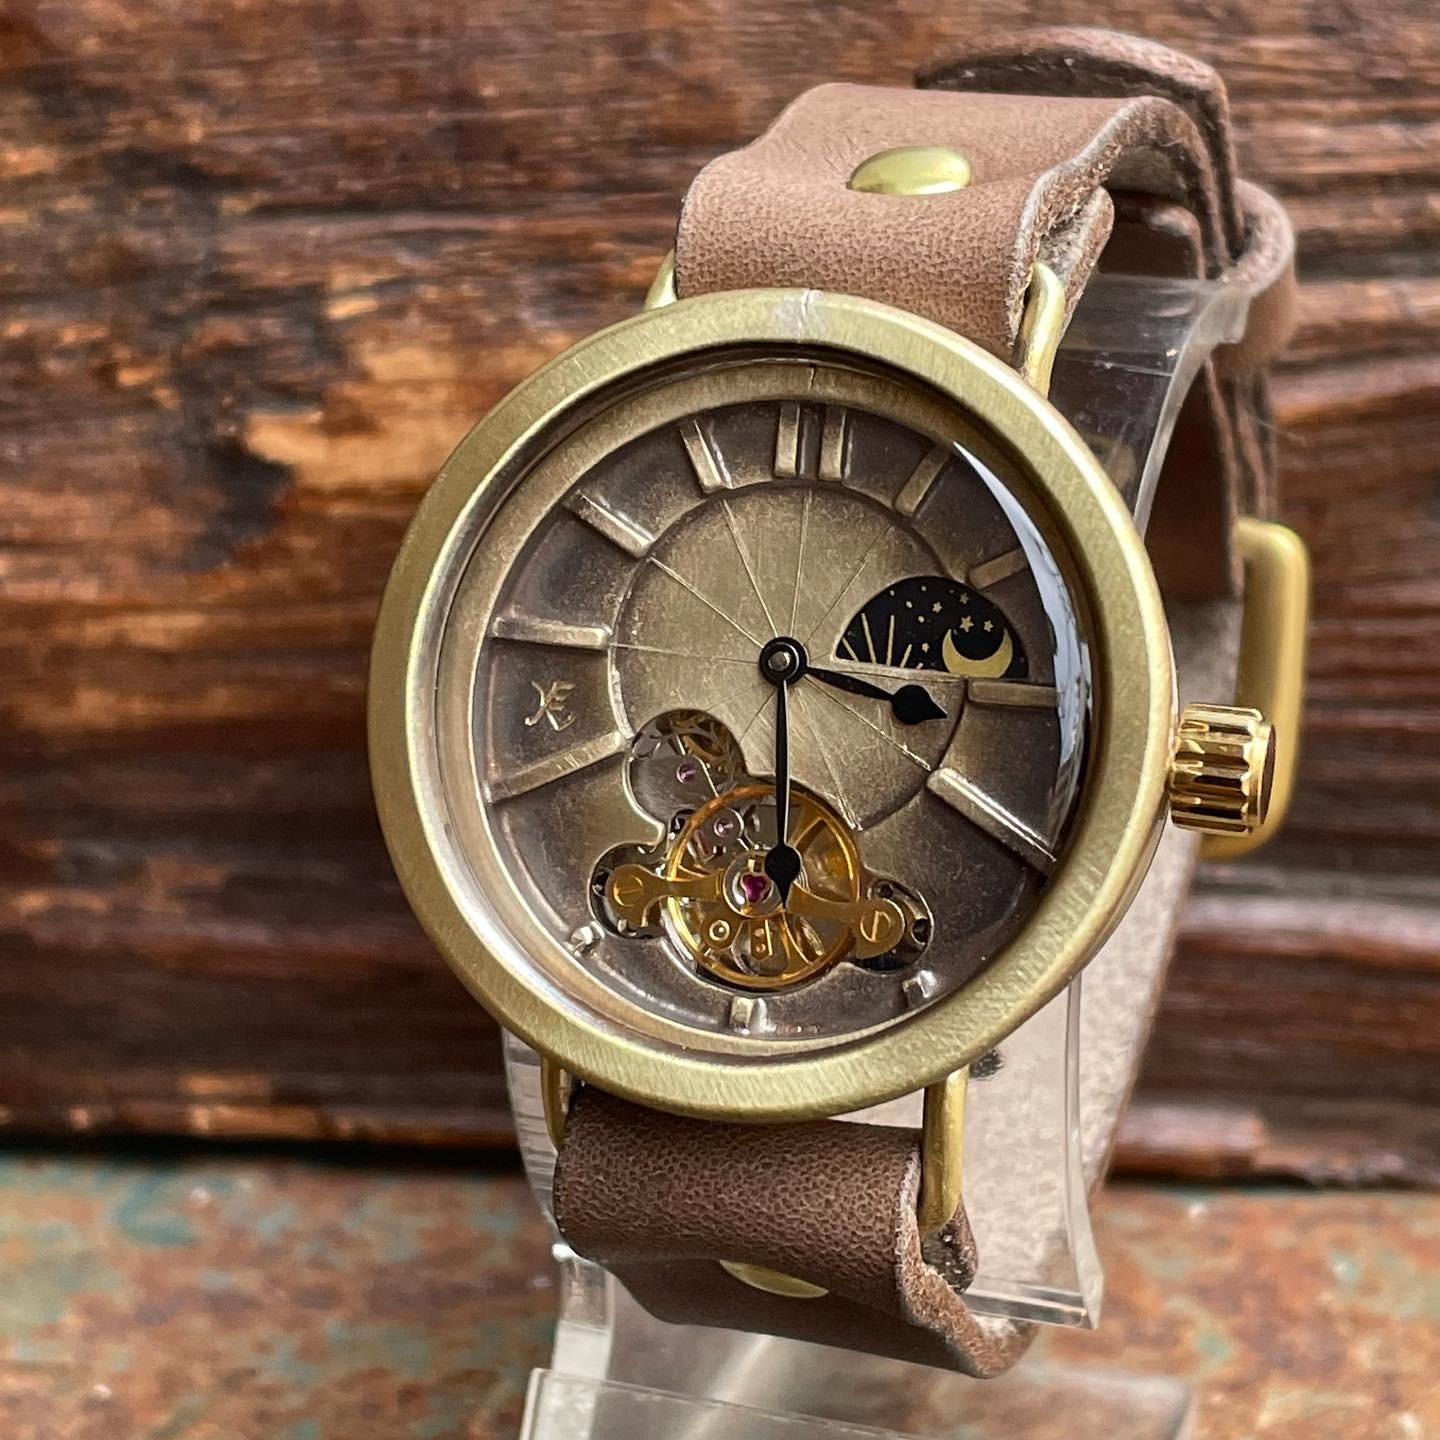 ◇真鍮製 SUN&MOON機能付 手巻式手作り腕時計◇LBM-2032-SM 腕時計 KEN